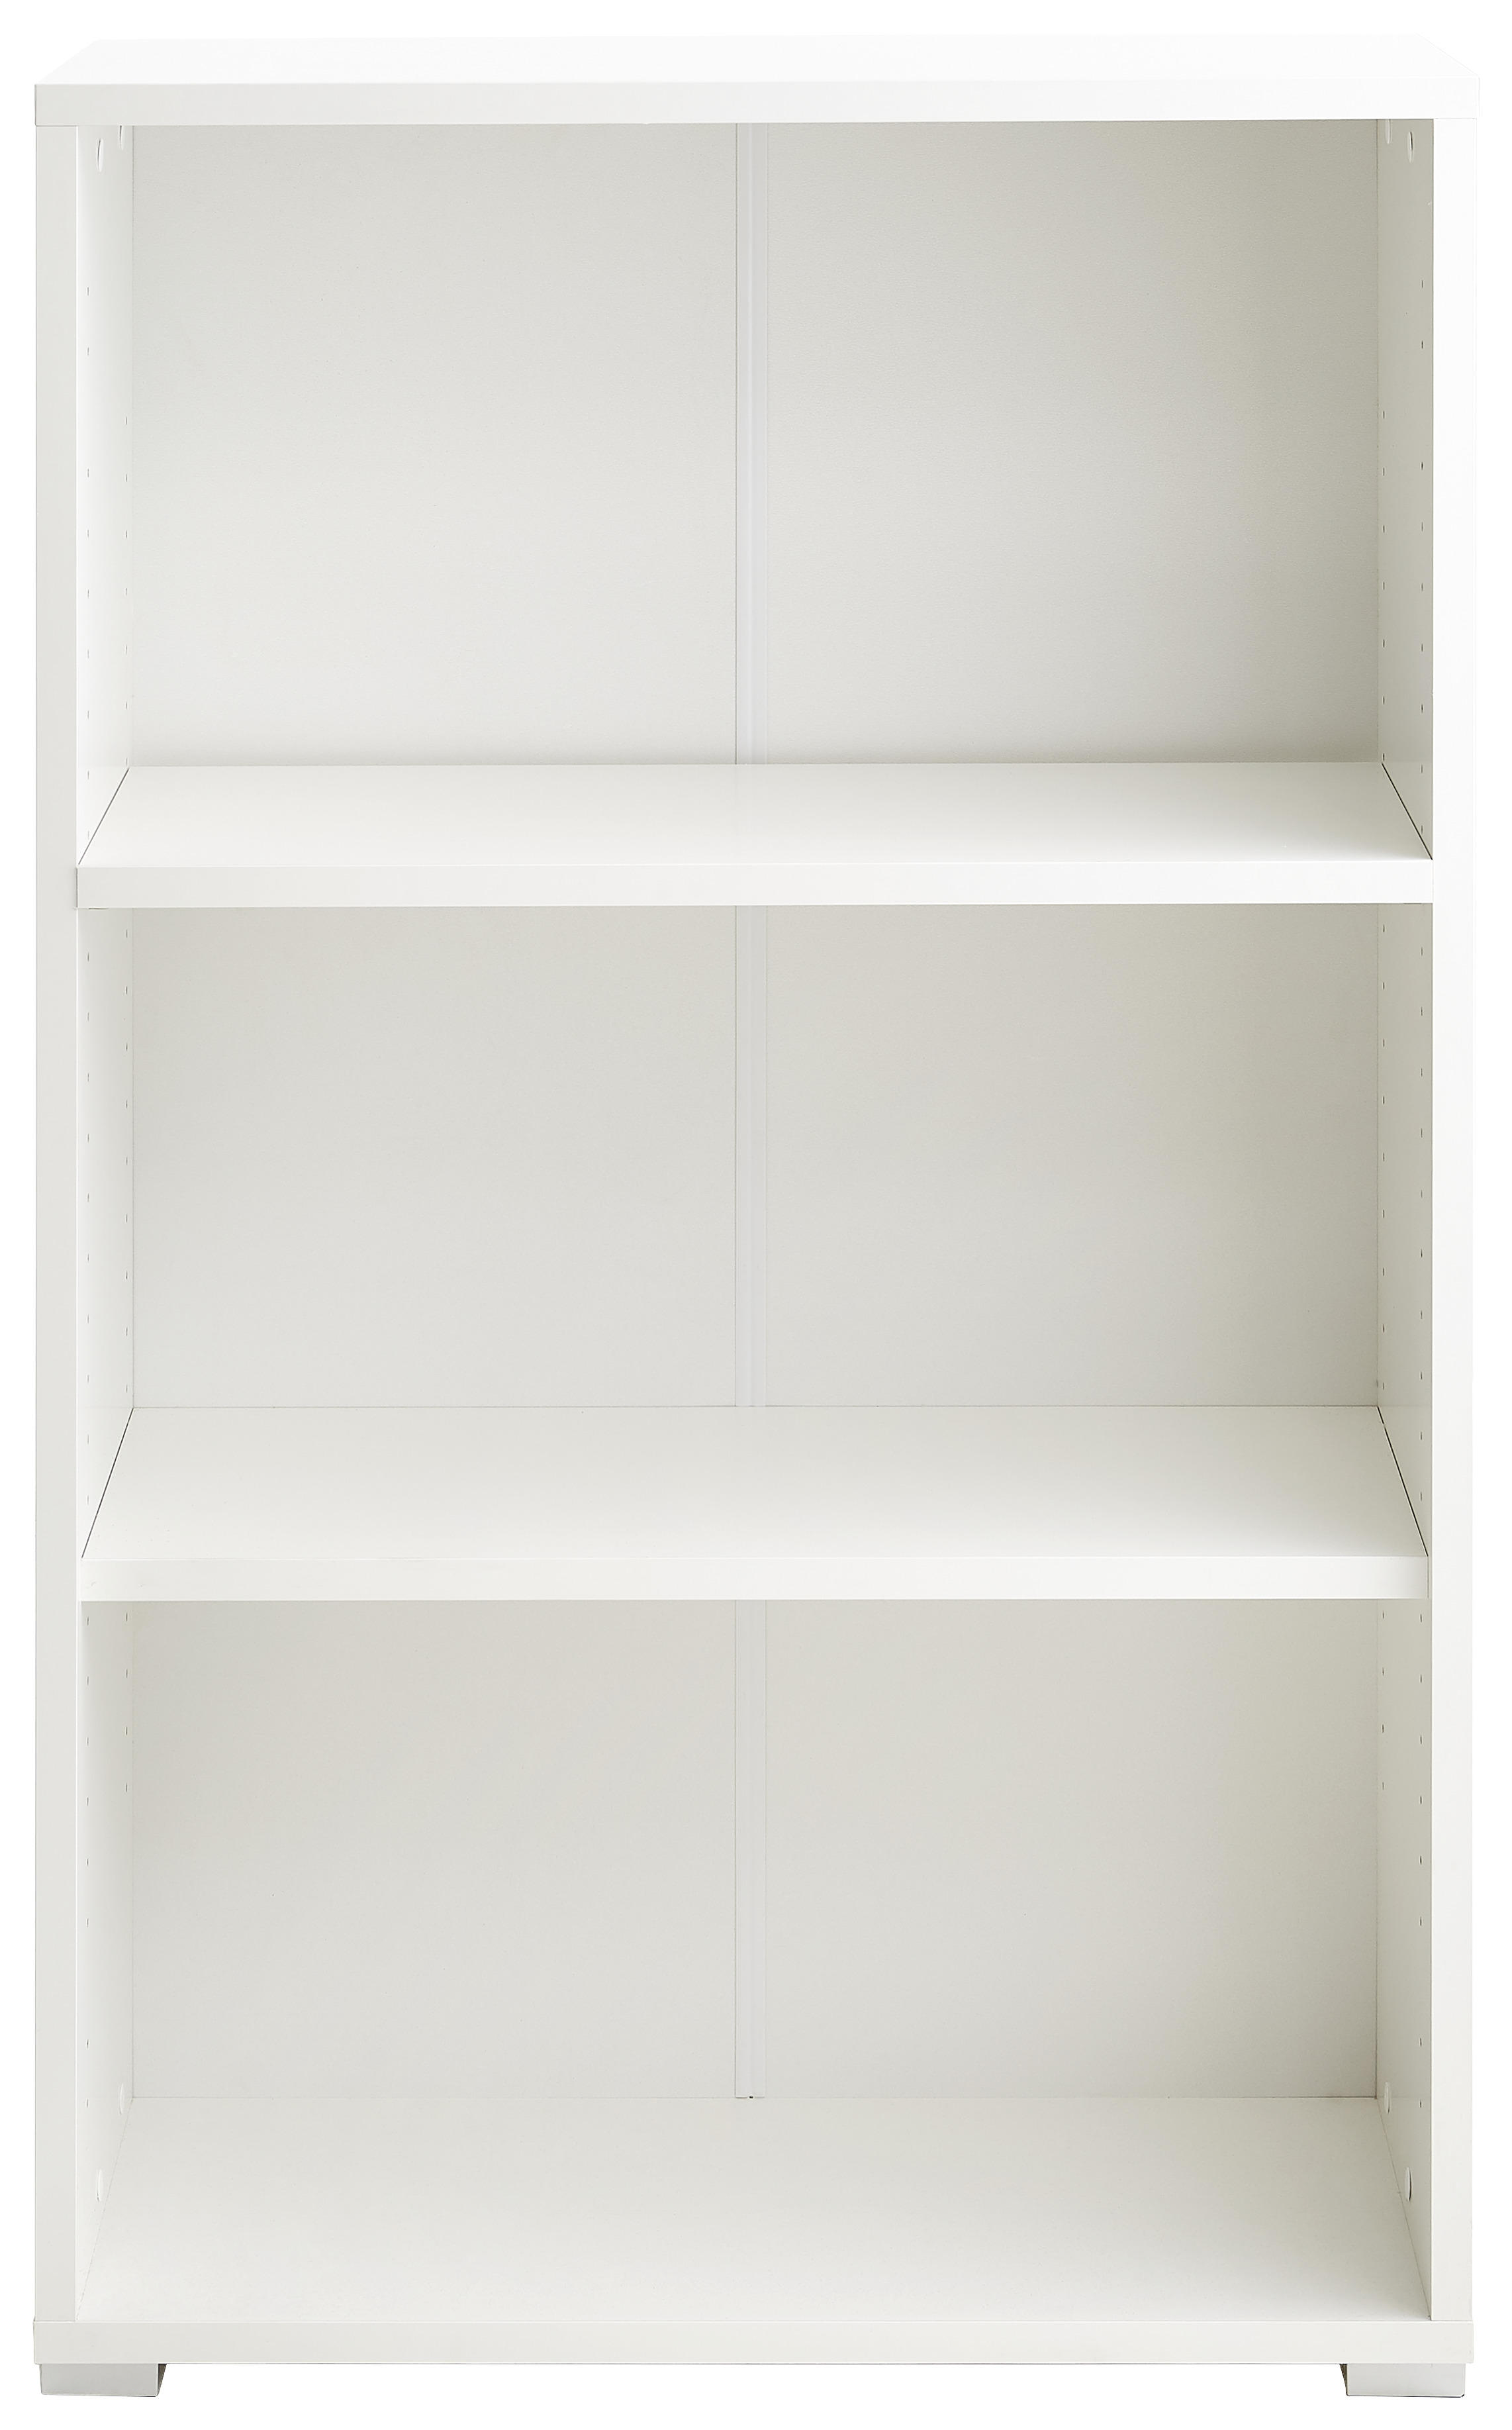 REGÁL, biela, 74,6/121/34 cm - biela/svetlosivá, Basics, kompozitné drevo (74,6/121/34cm) - Xora